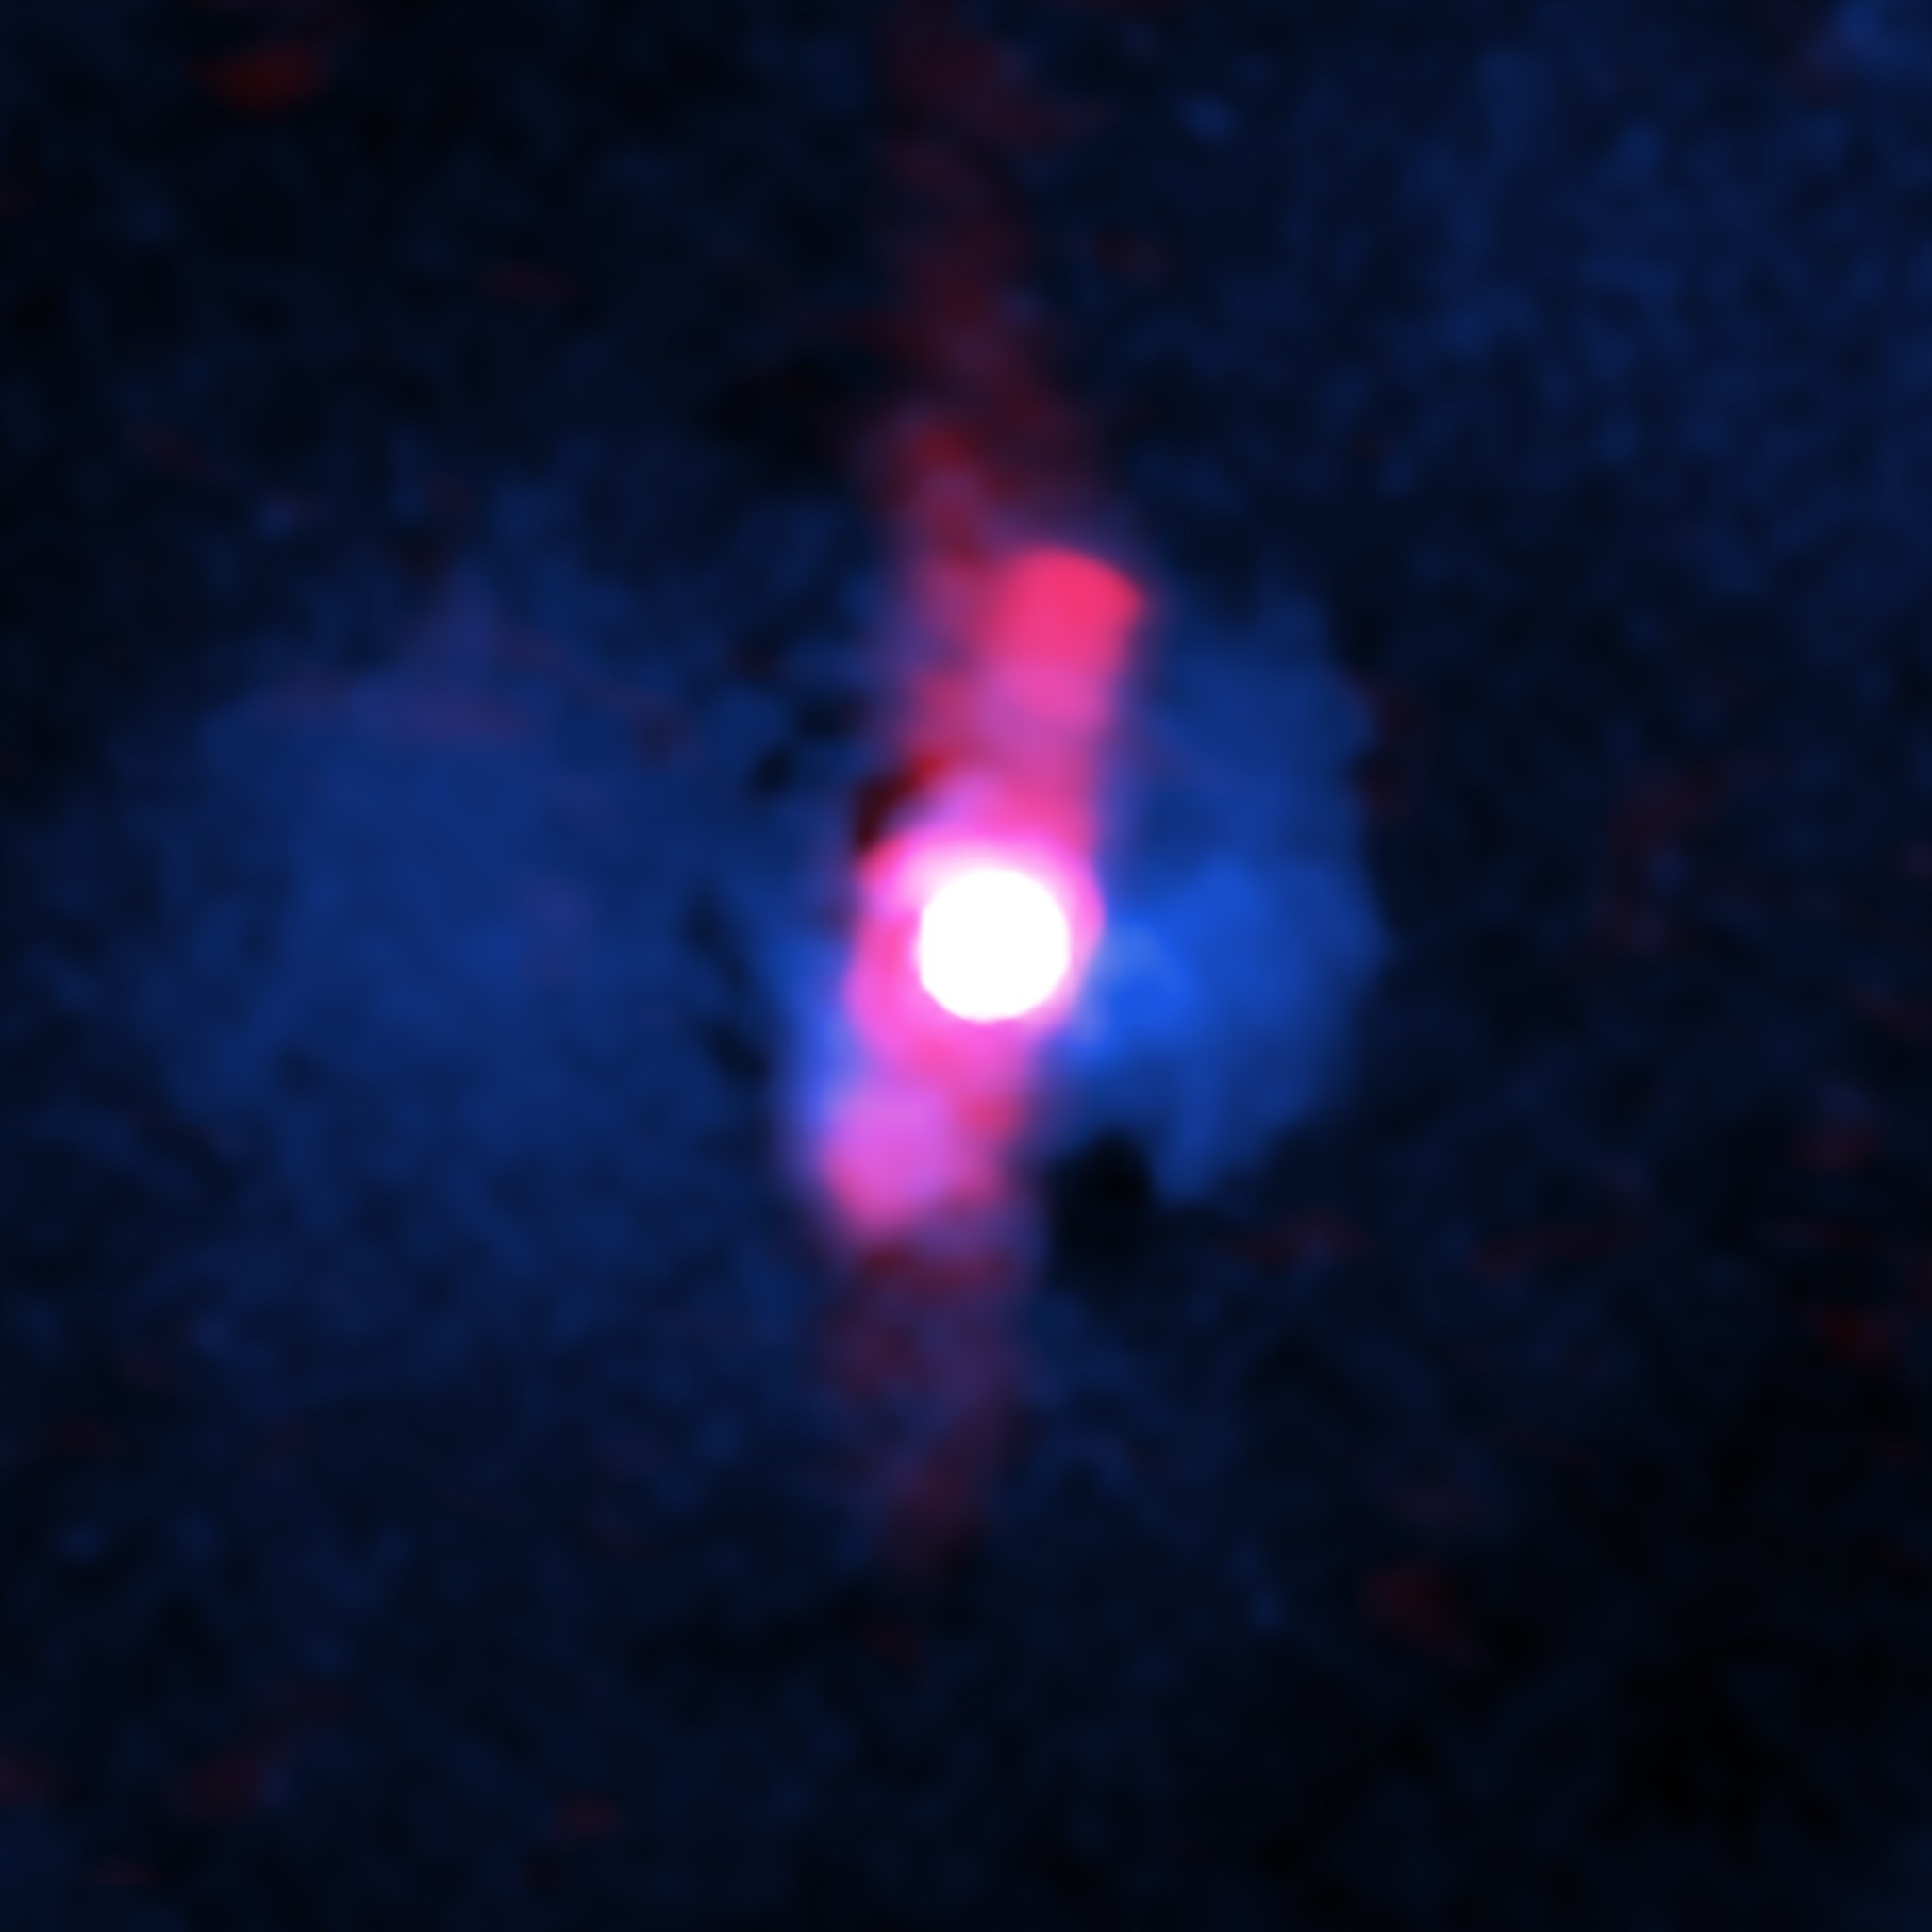 Quasar H1821+643.